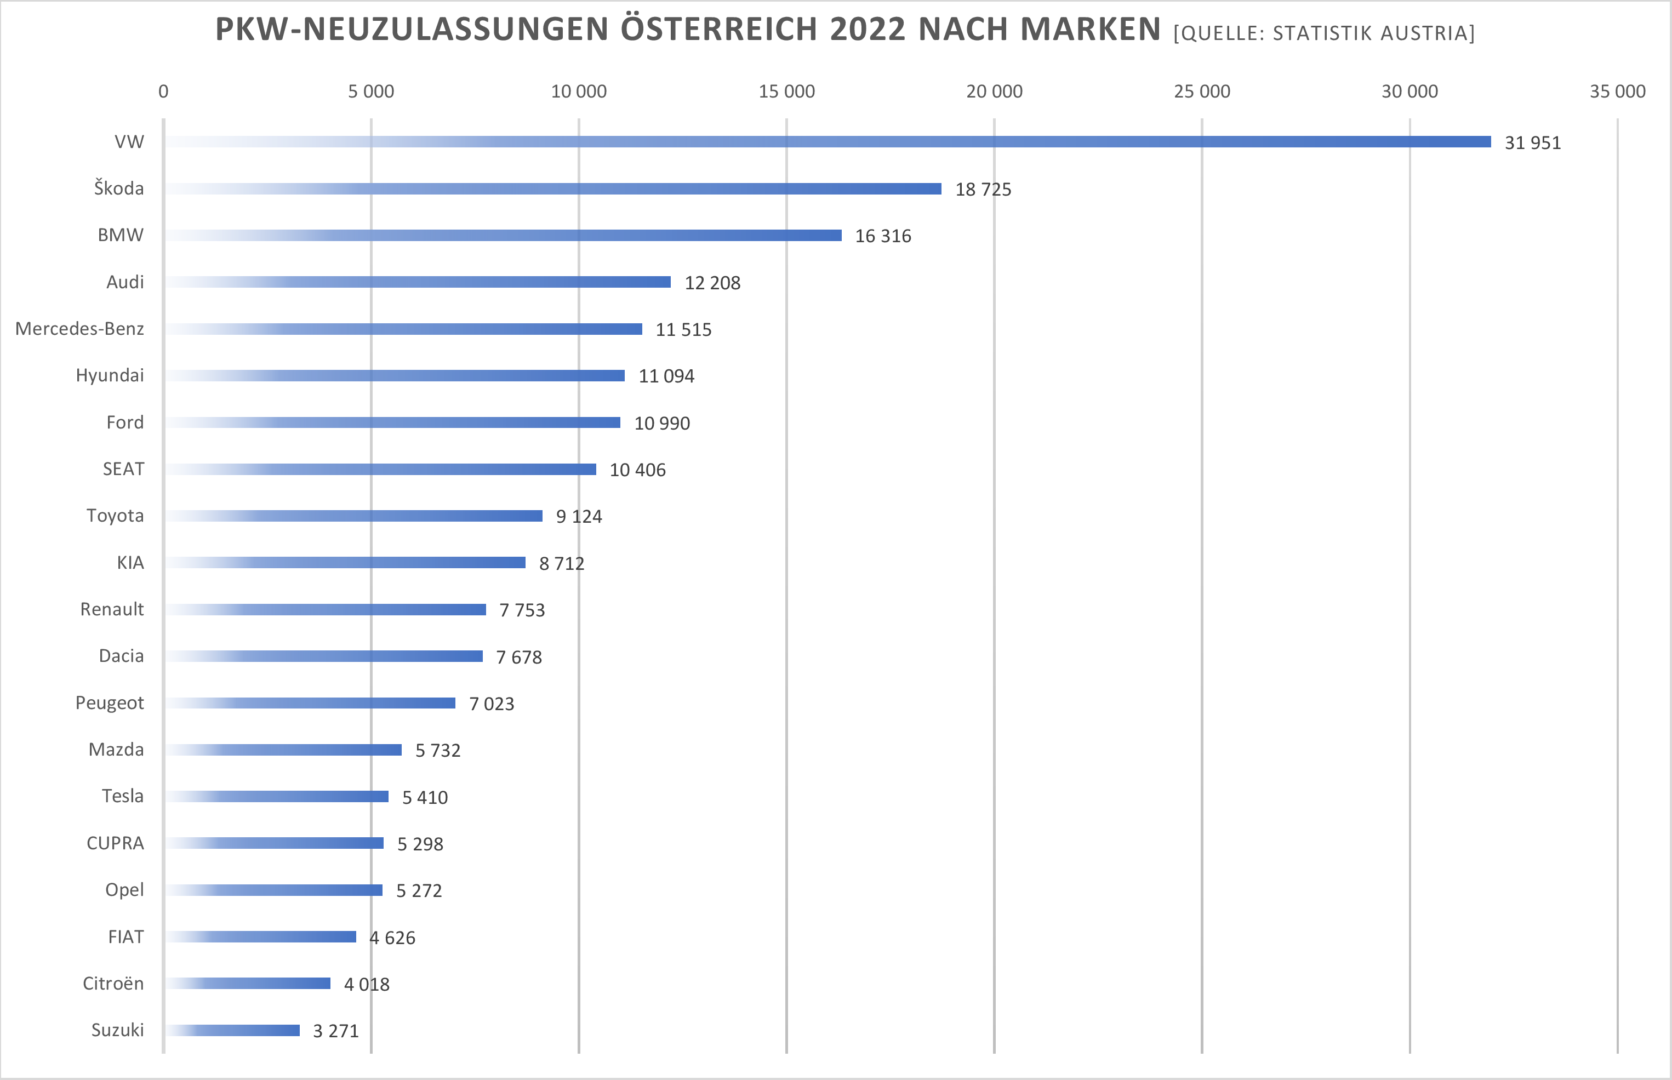 Die Top 20 PKW-Neuzulassungen im Jahr 2022 nach Marken